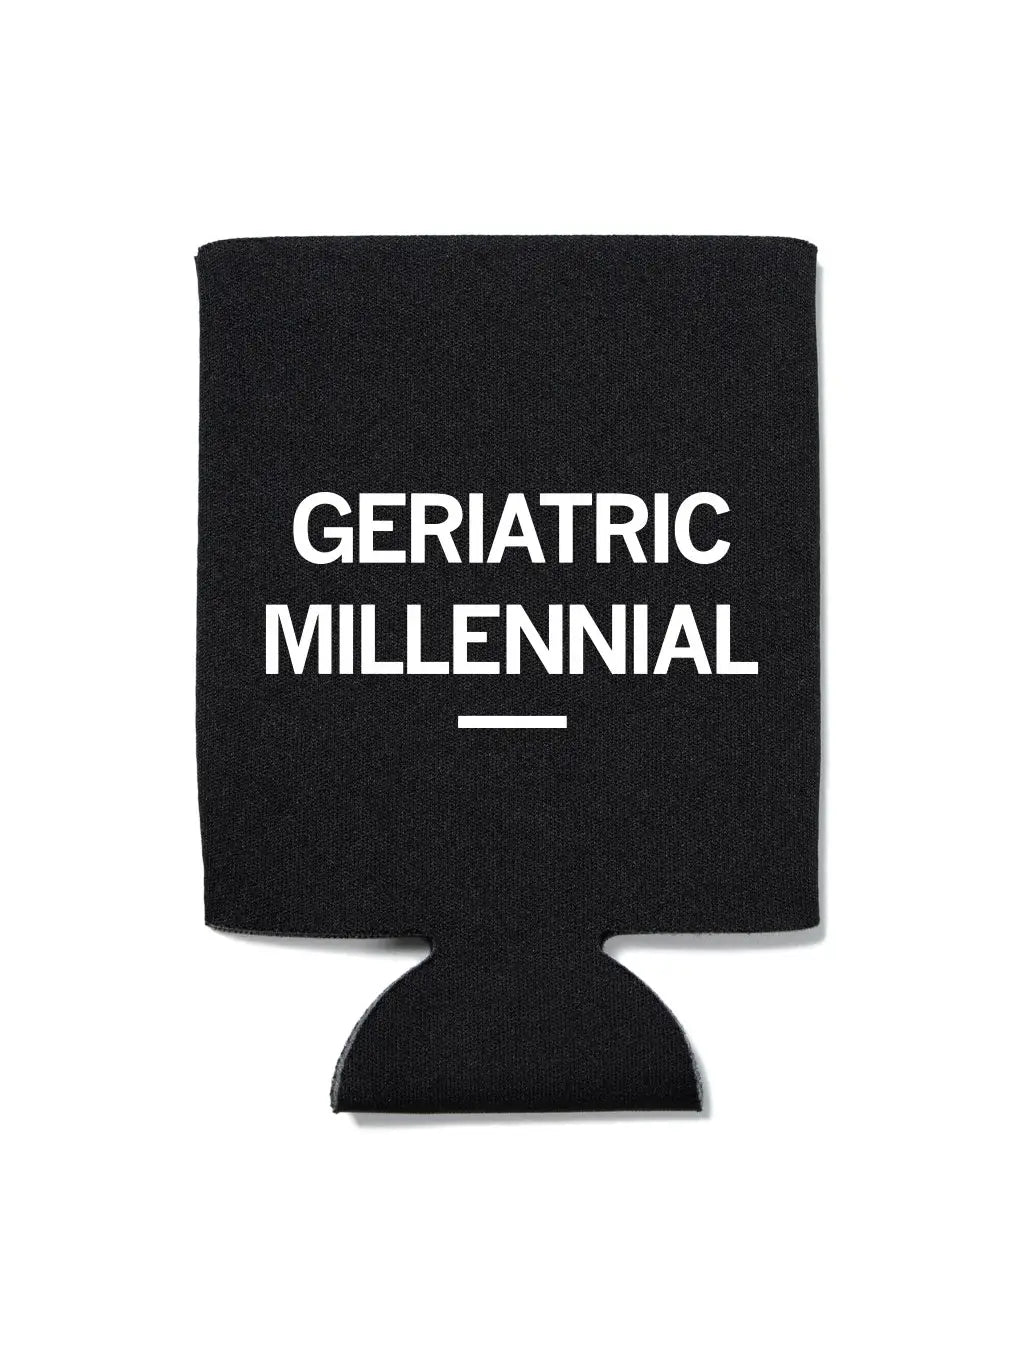 Geriatric Millennial Can Cooler